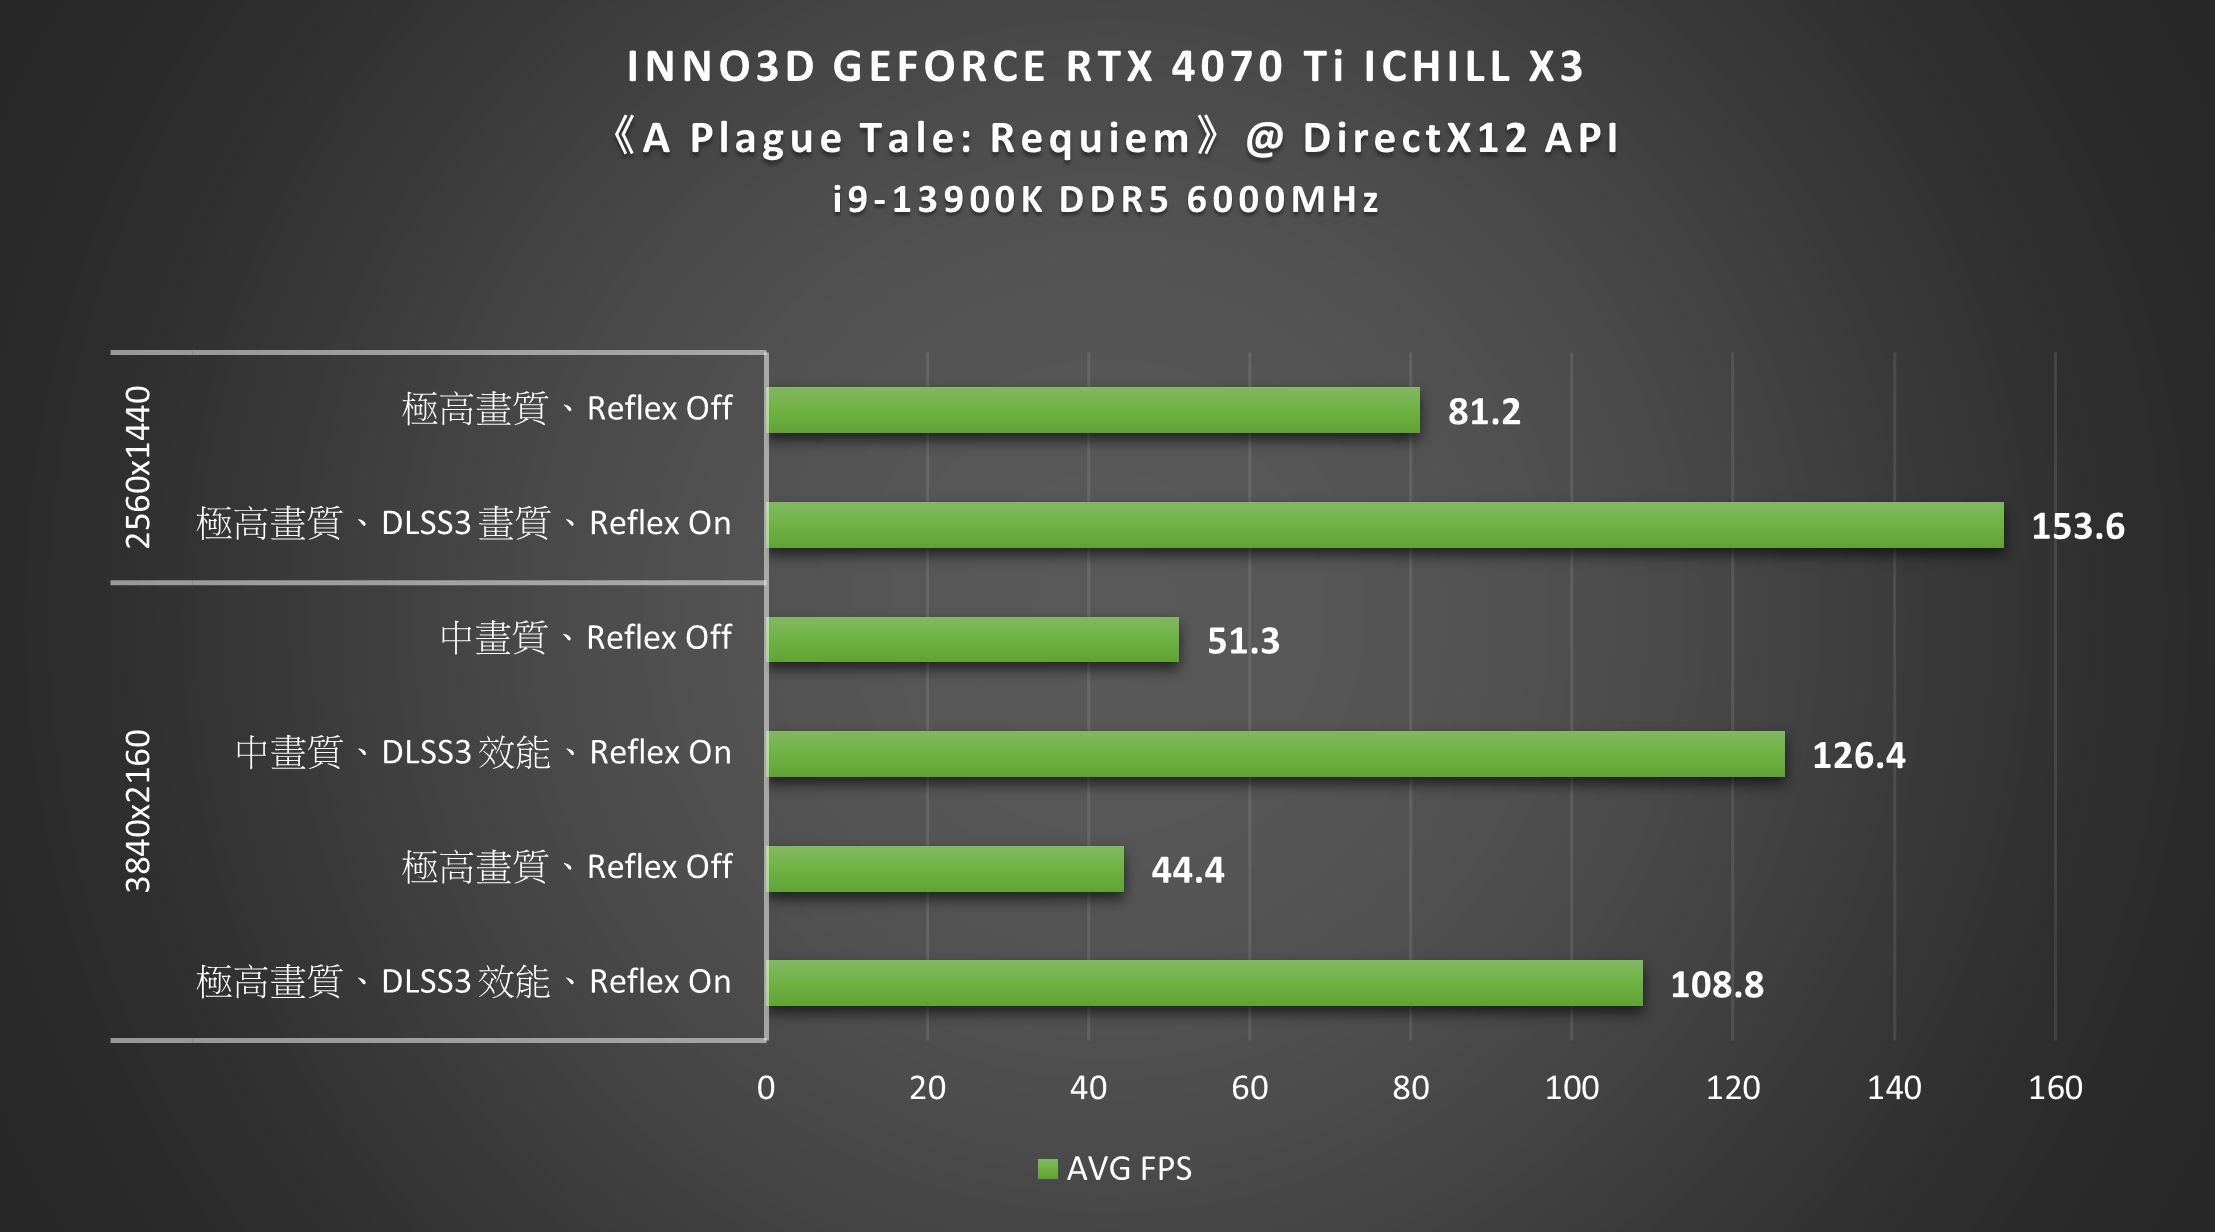 INNO3D GEFORCE RTX 4070 Ti ICHIL